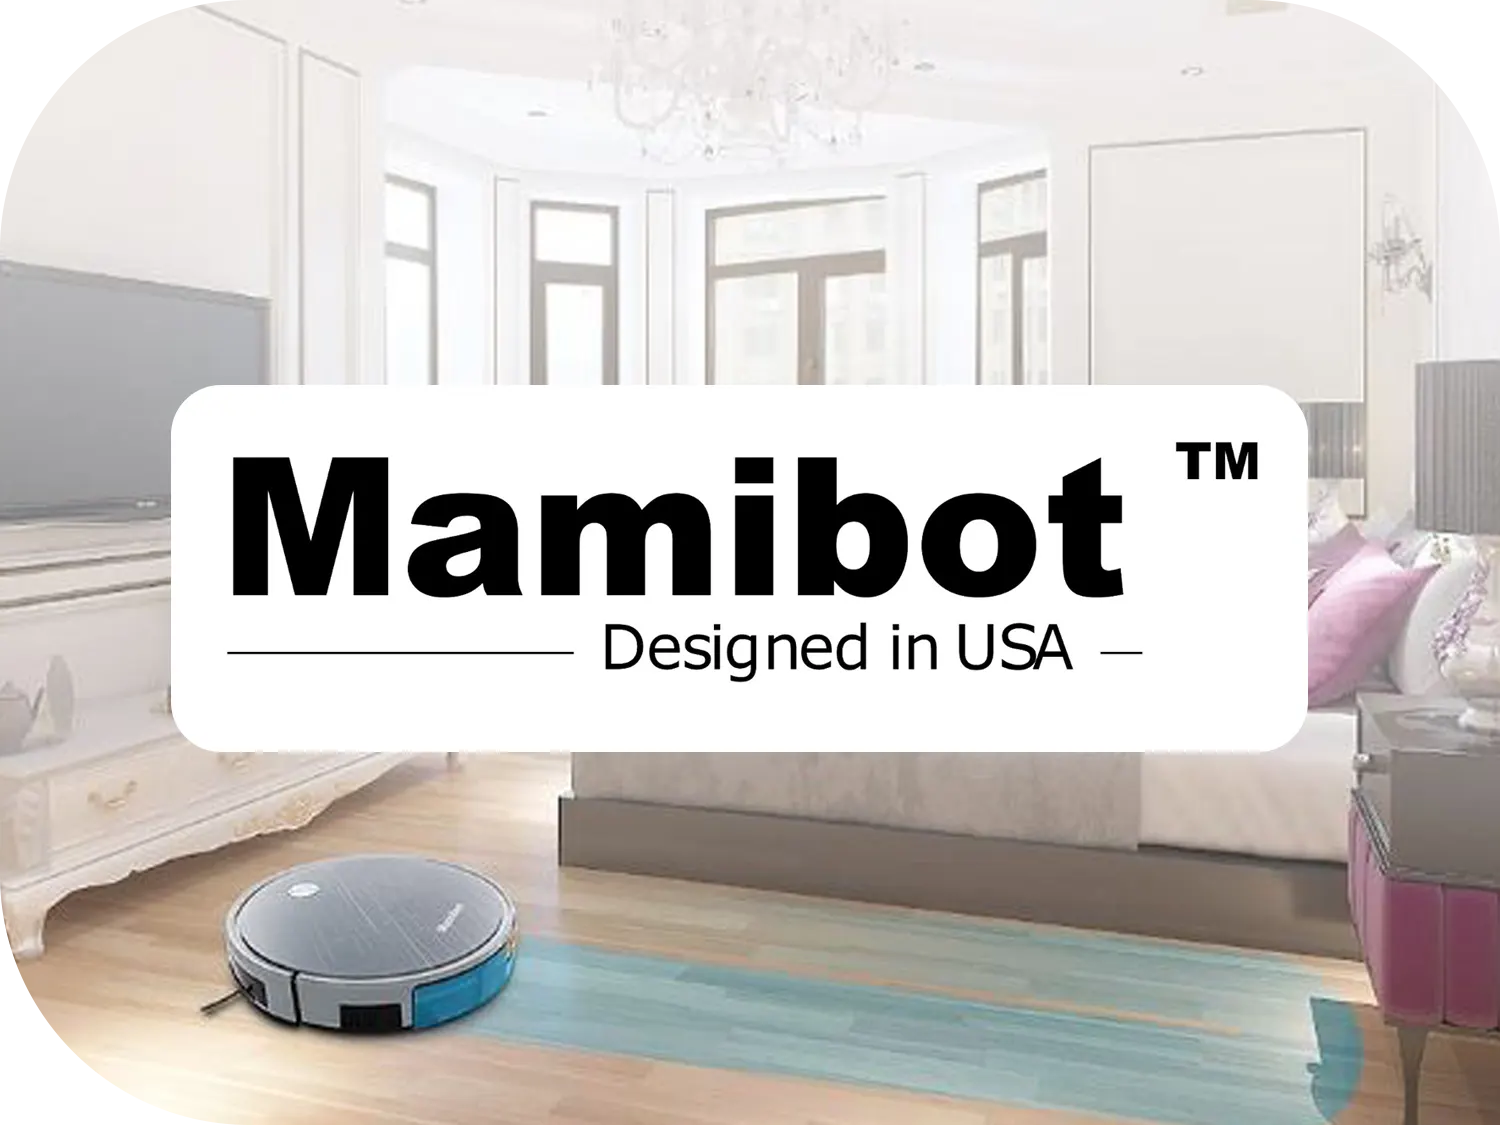 Producent robotów sprzątających Mamibot